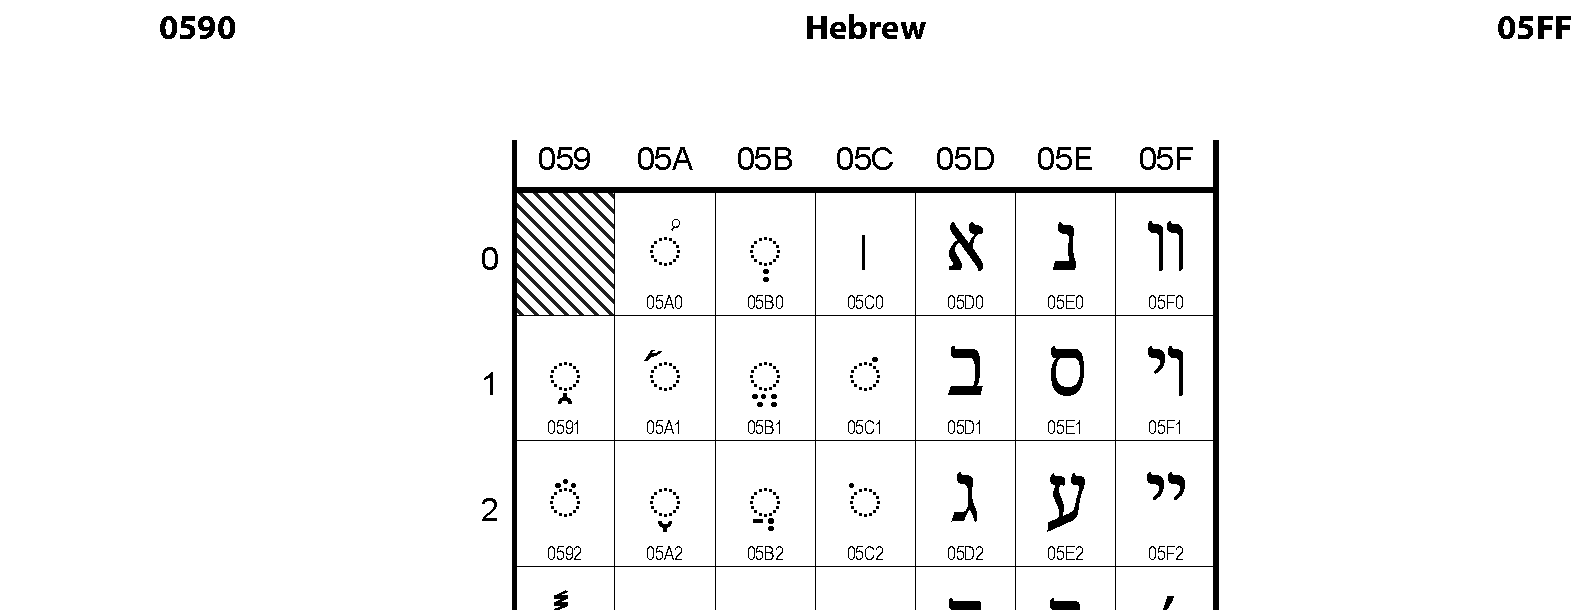 Unicode - Hebrew